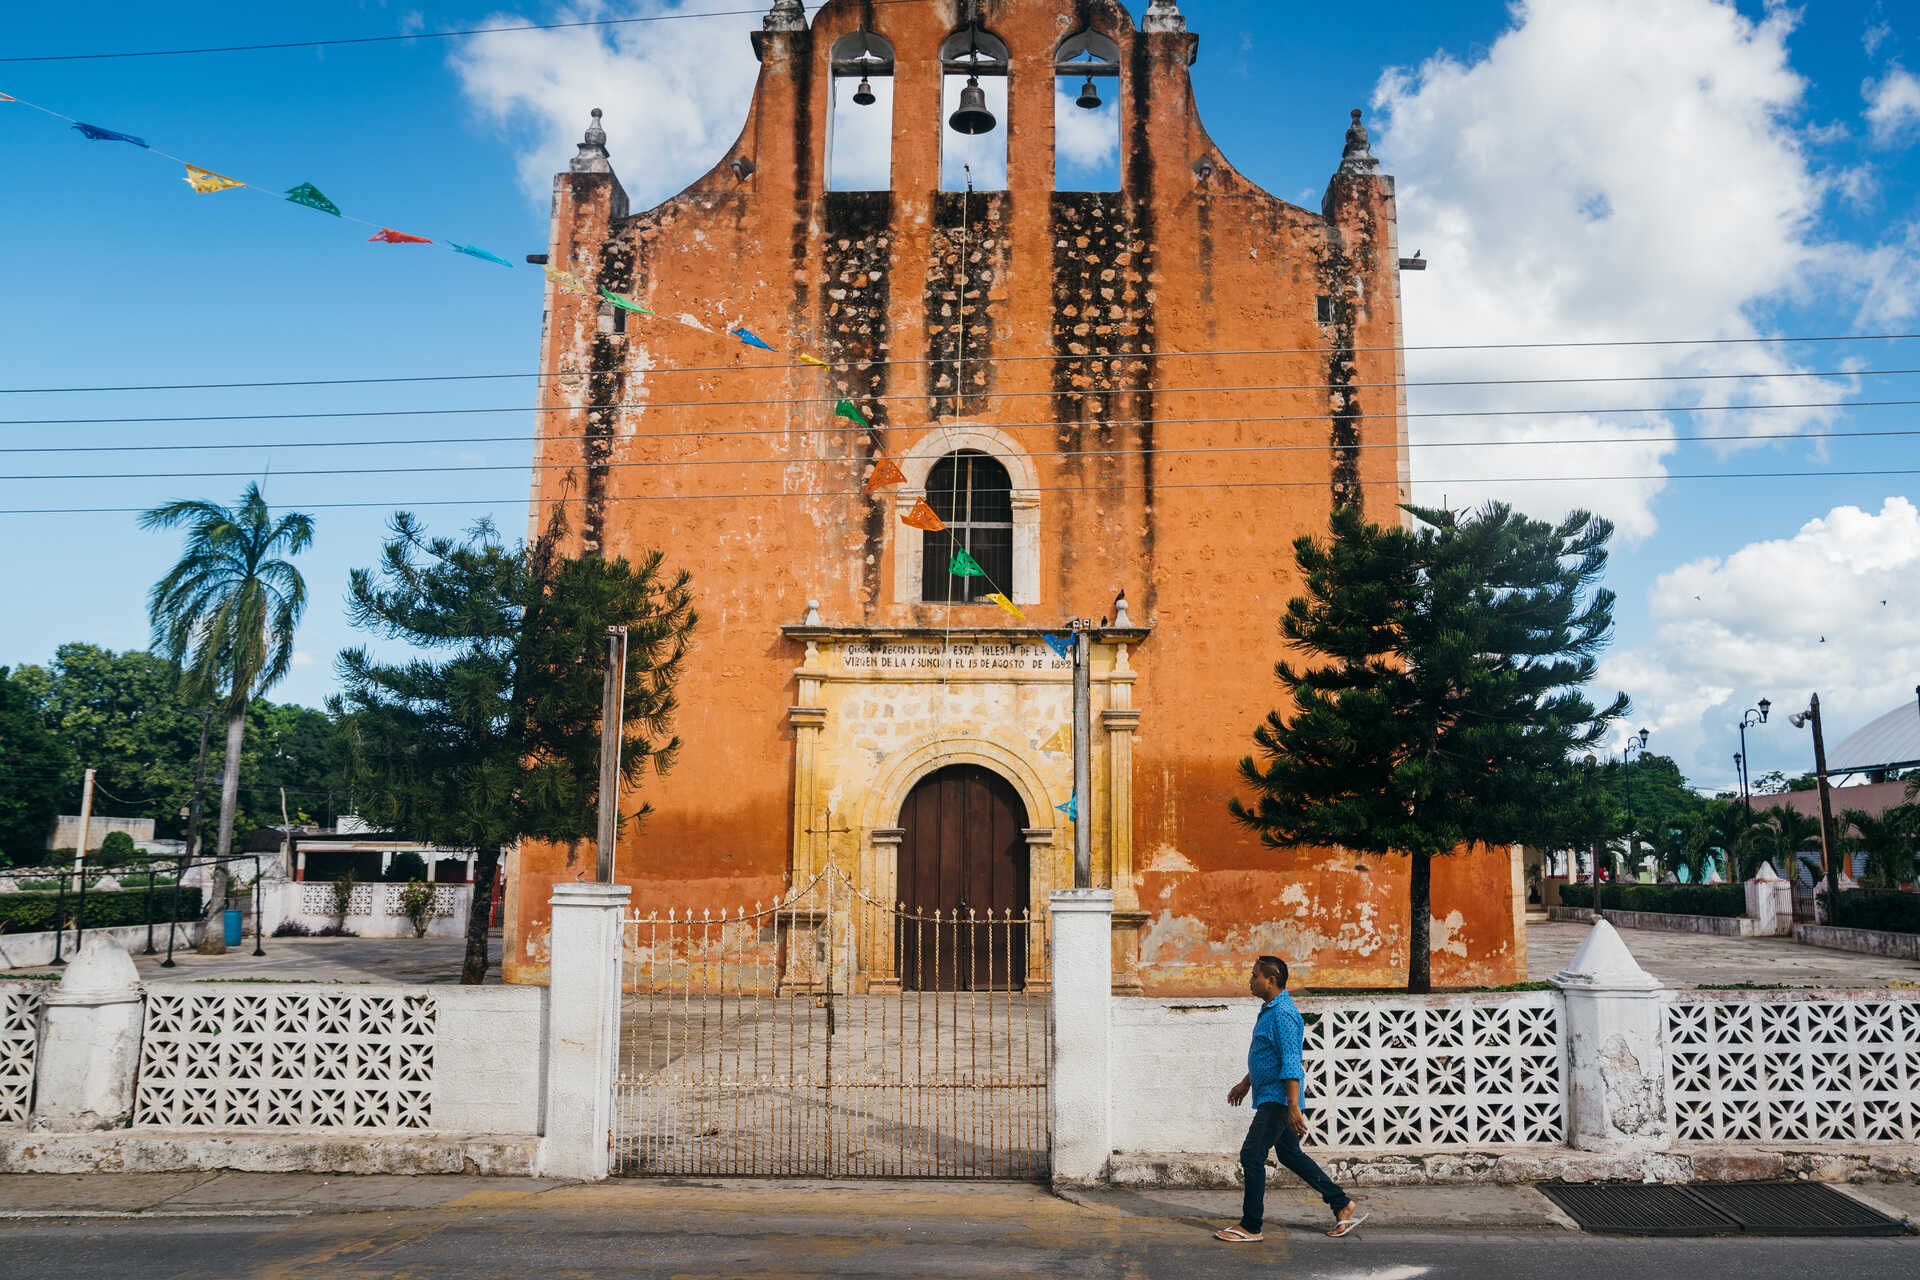 Iglesia de Temozón in Temozón, Mexico